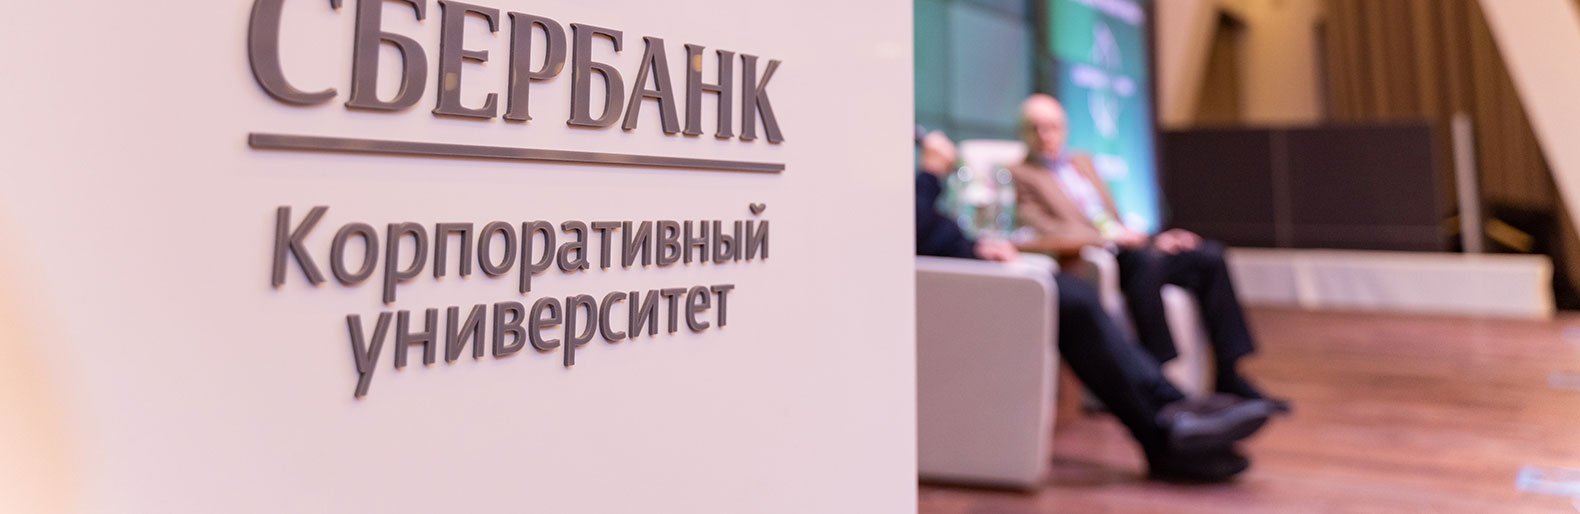 Представители крупного бизнеса пройдут обучение по программе крупнейшего российского банка